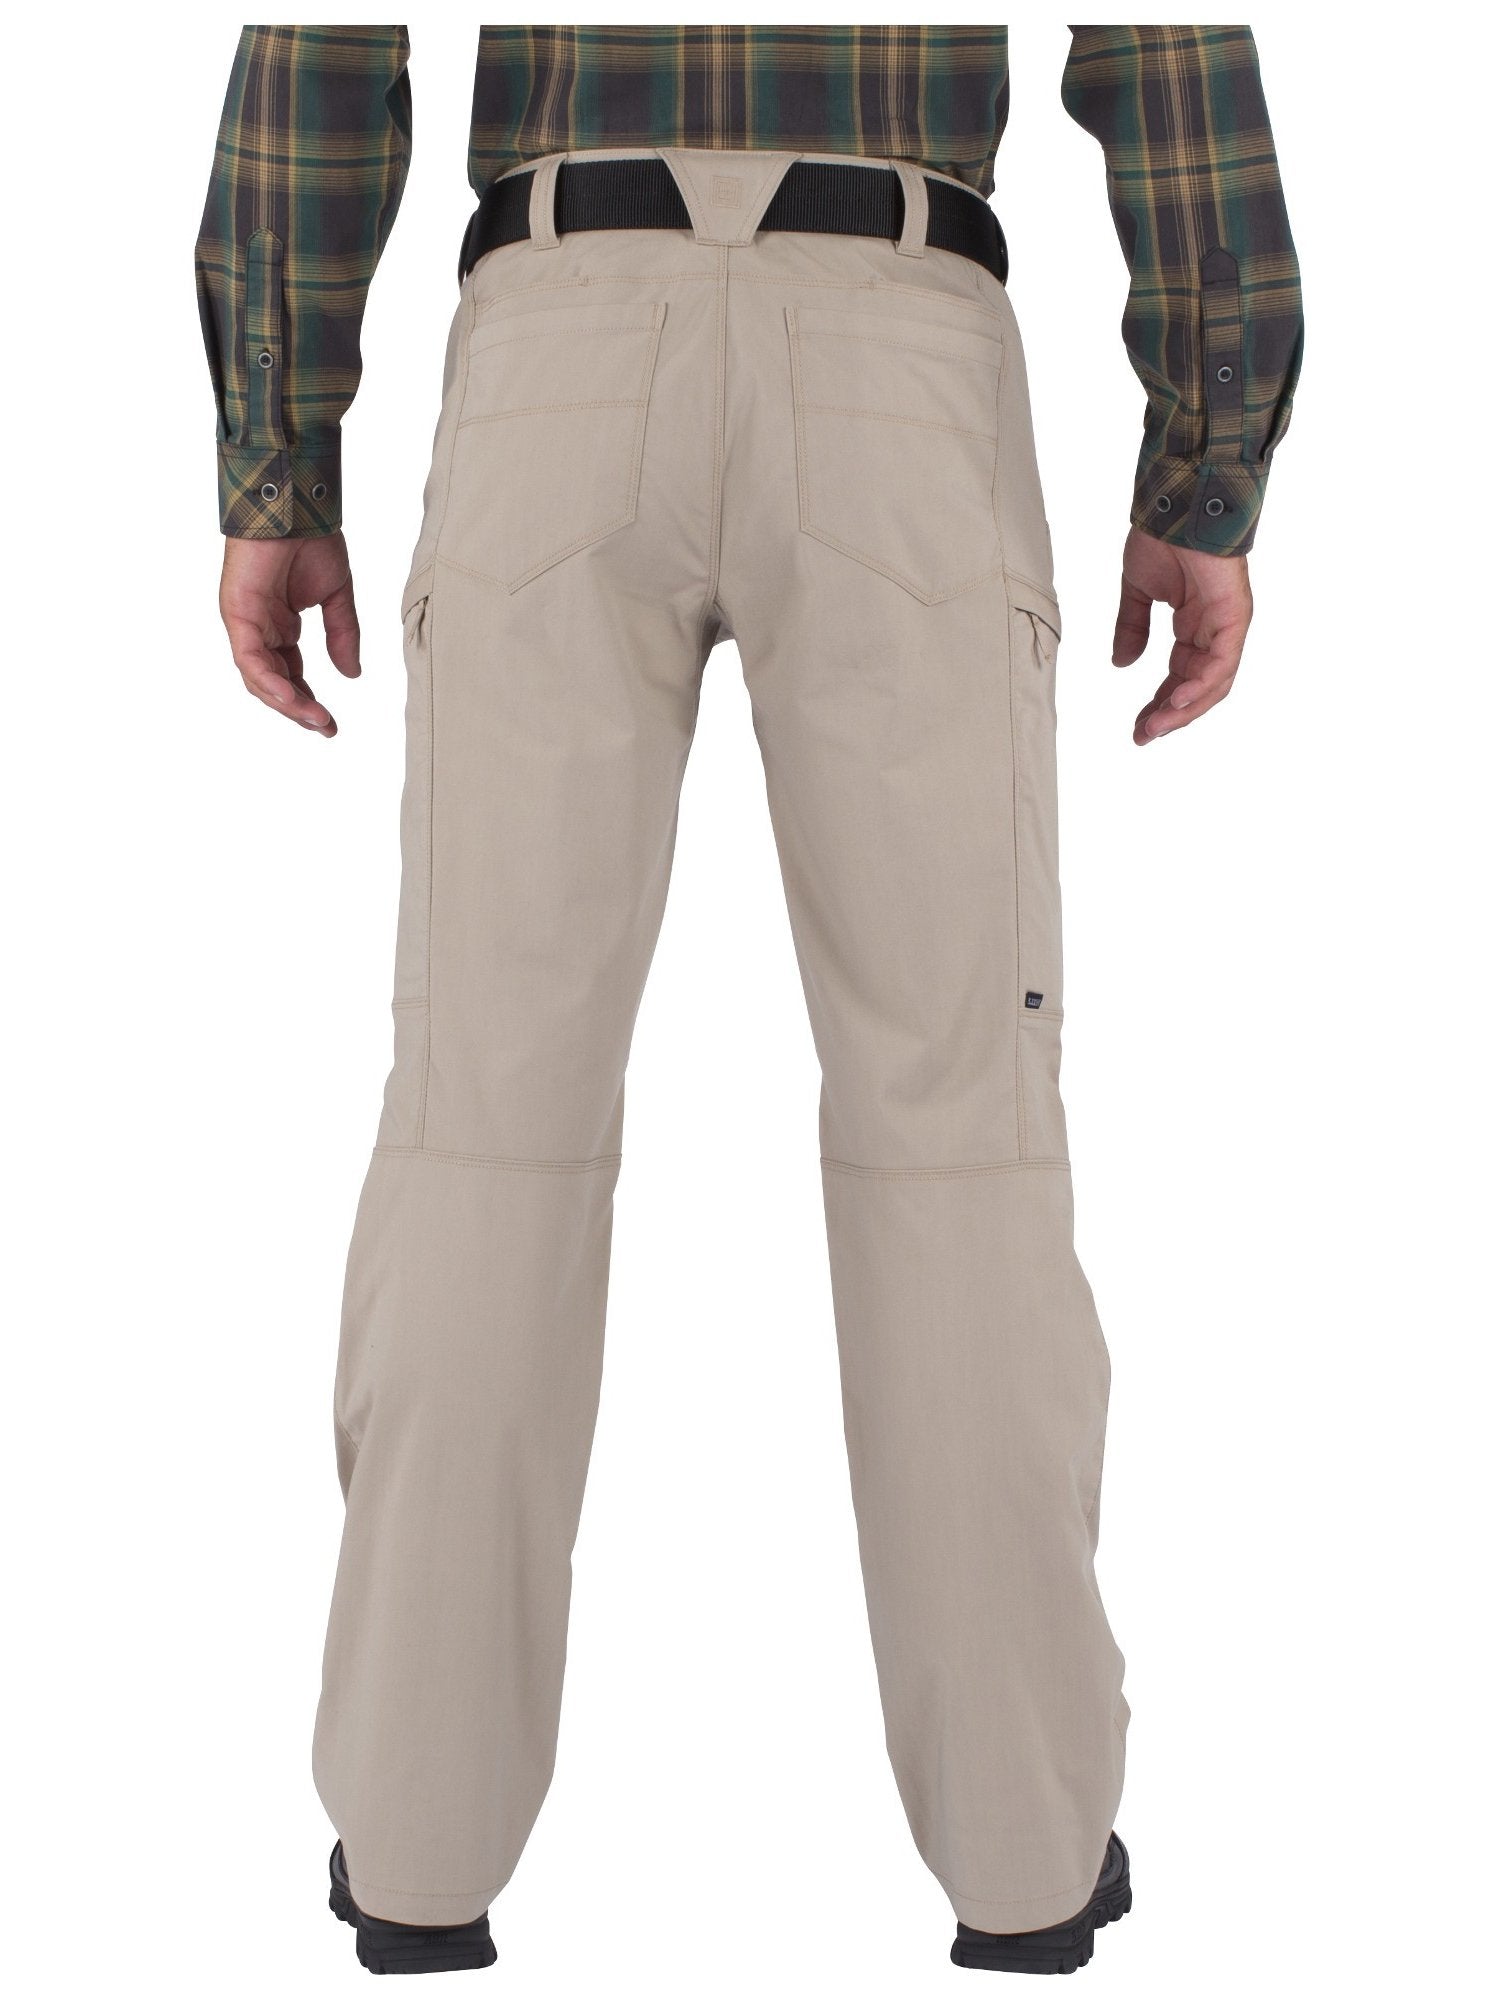 5.11 Tactical Apex Pants - Khaki - TacSource